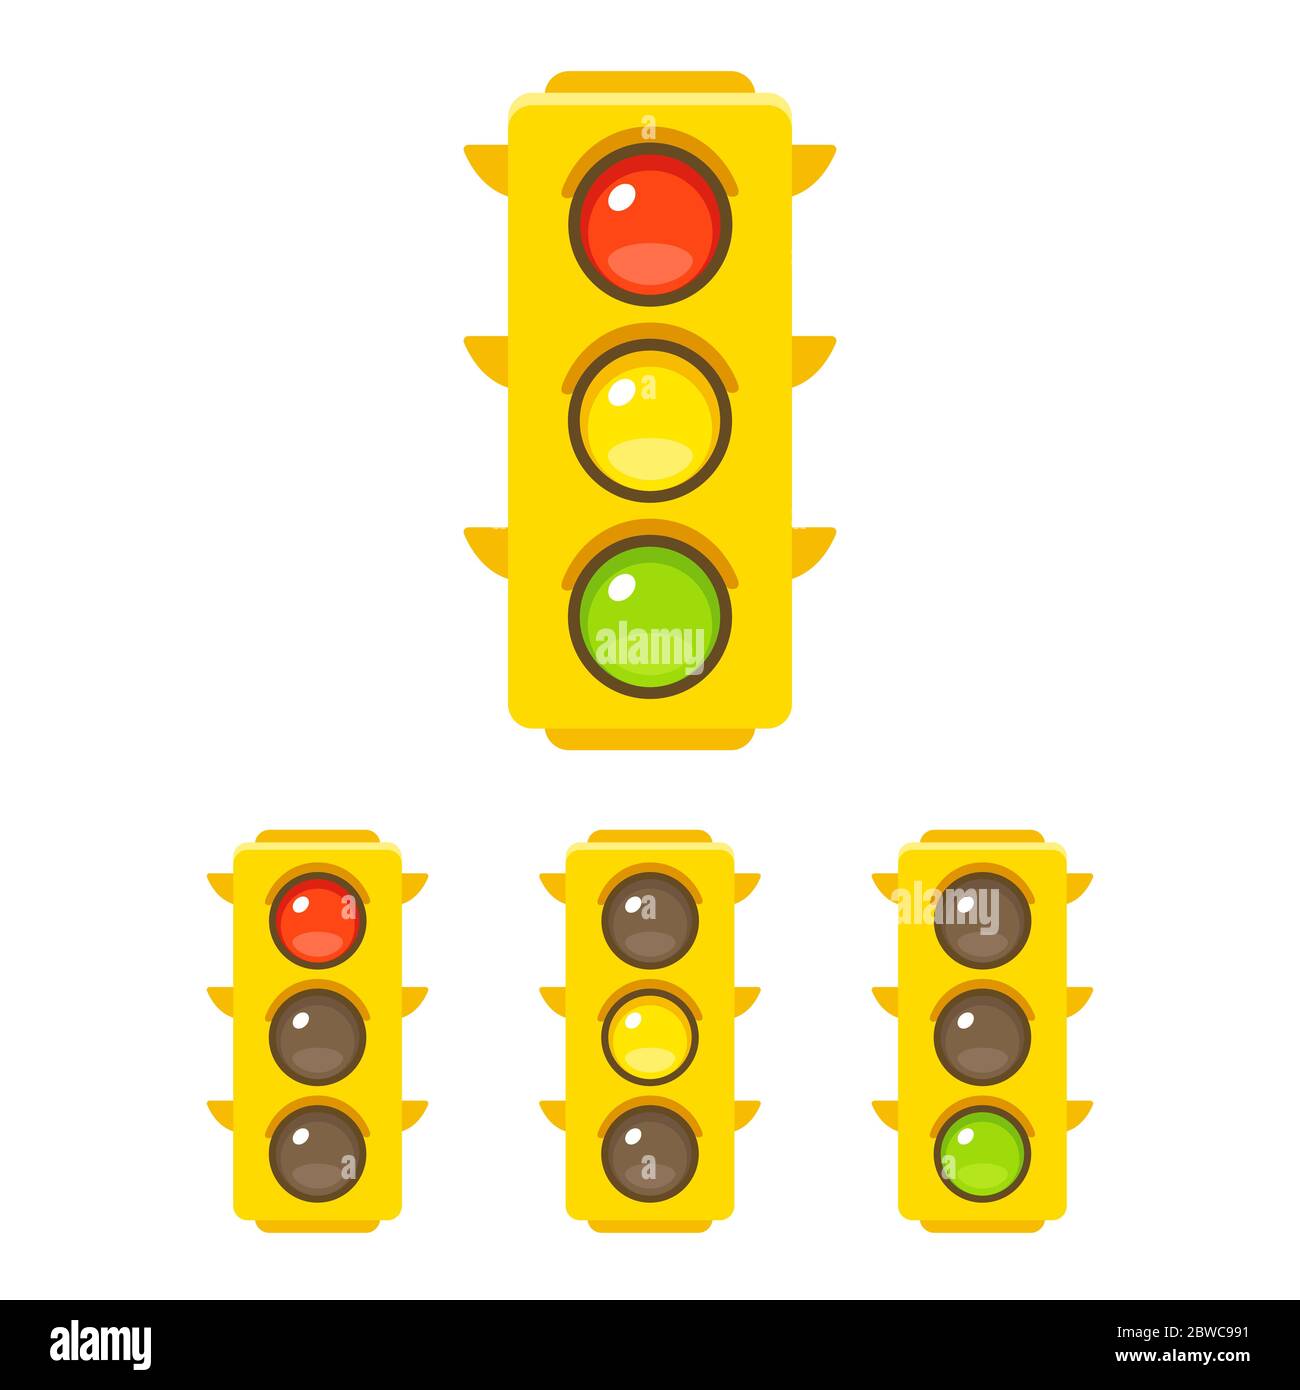 Icona semaforo impostata con luce rossa, gialla e verde. Illustrazione grafica vettoriale in stile semplice e piatto. Illustrazione Vettoriale